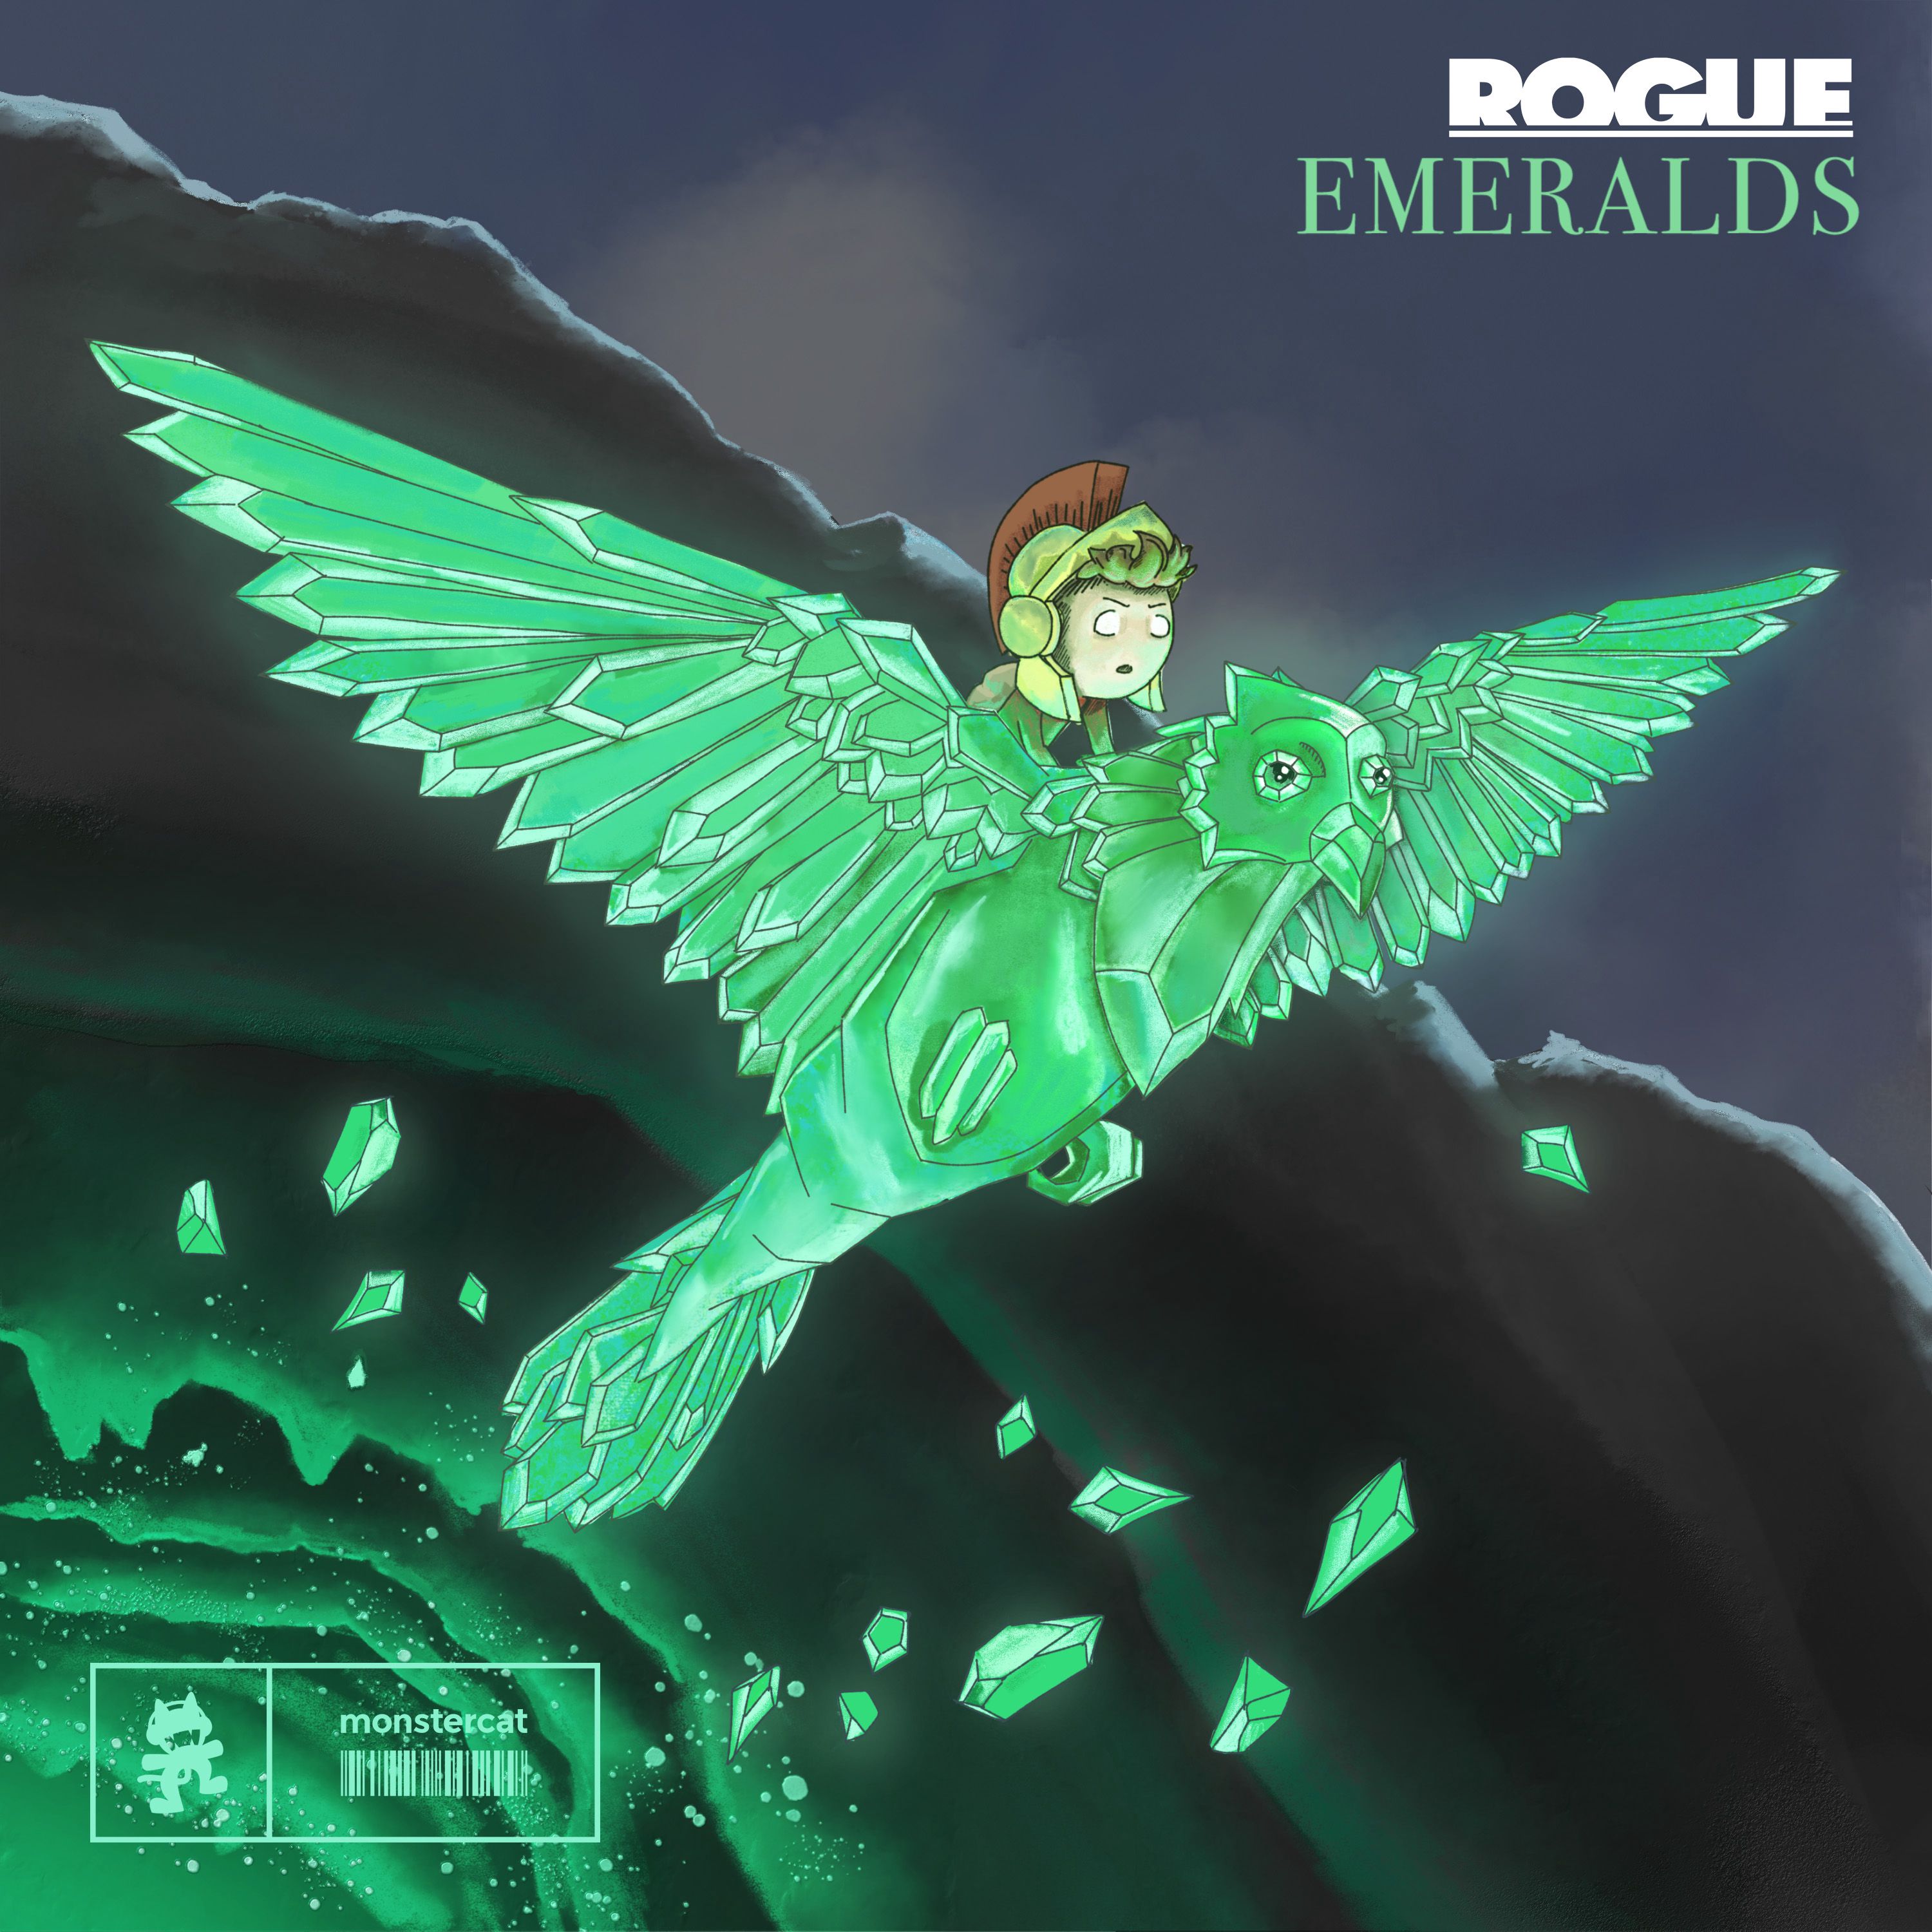 Emerald rogue